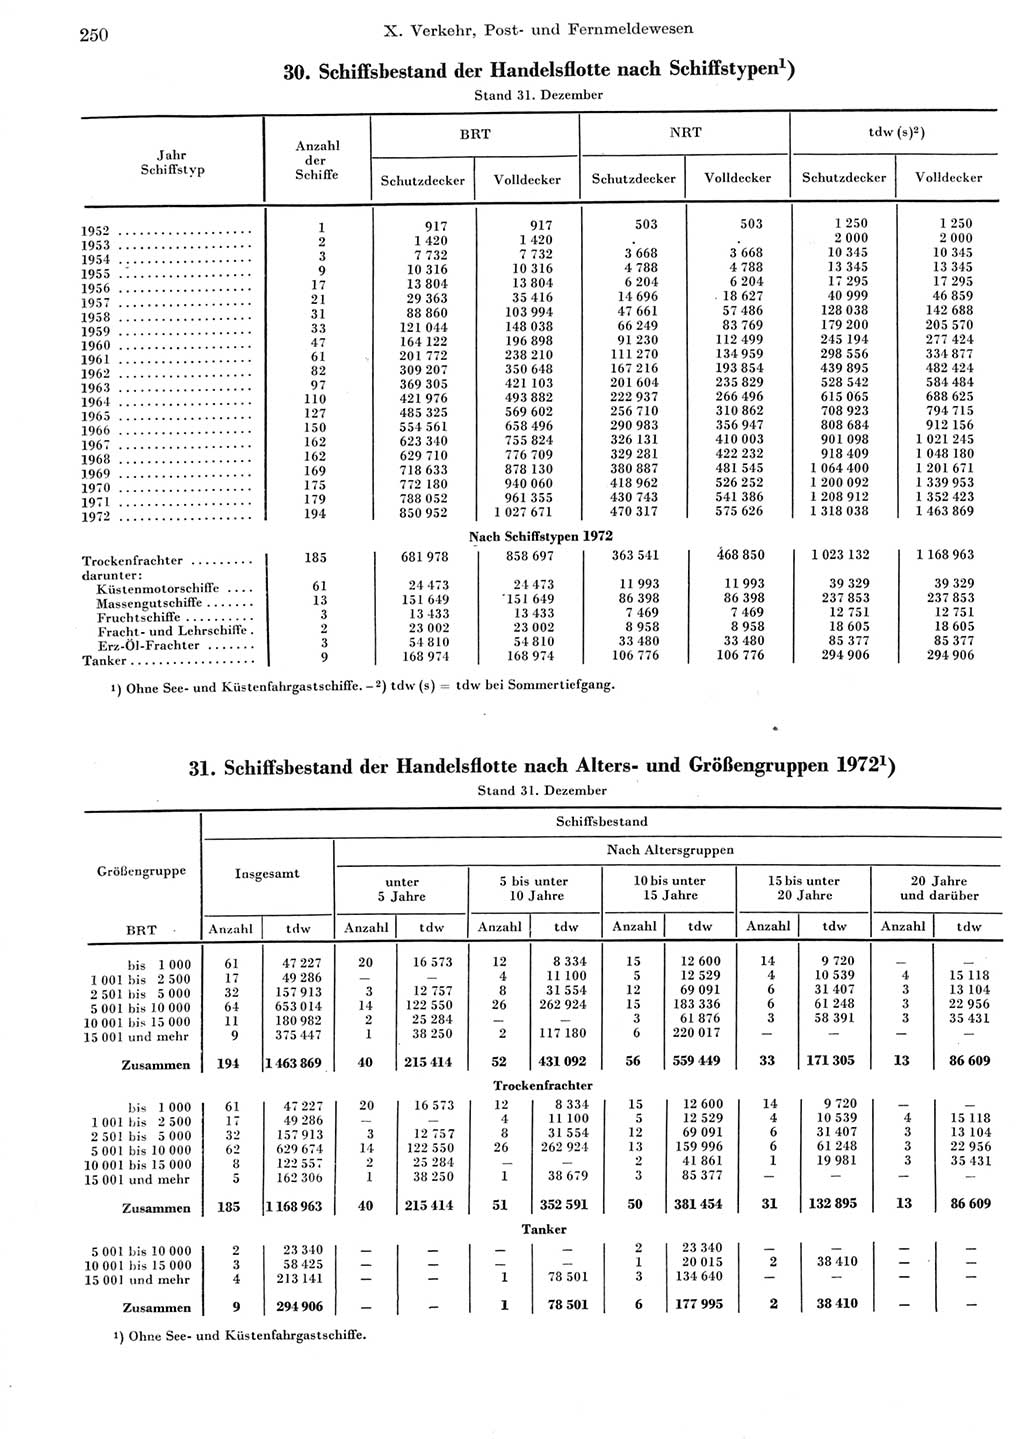 Statistisches Jahrbuch der Deutschen Demokratischen Republik (DDR) 1973, Seite 250 (Stat. Jb. DDR 1973, S. 250)